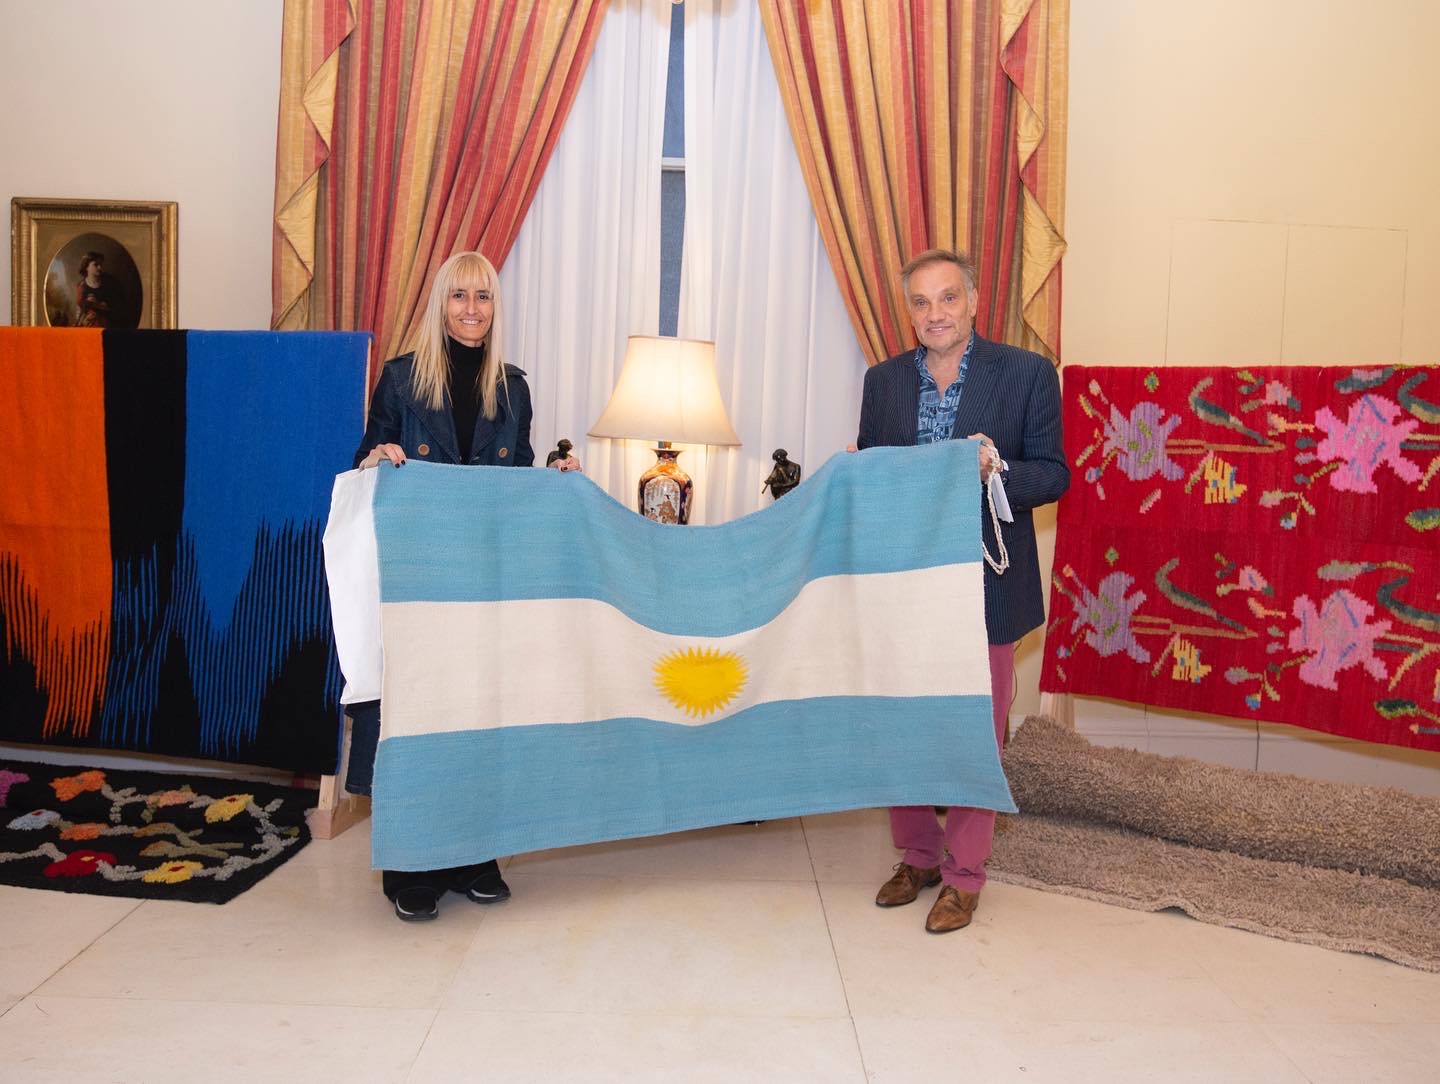 Carolina Pavetto junto al embajador argentino Javier Figueroa, con una de las banderas argentinas tejidas a mano, durante su visita a Londres, que coincidió con la muerte de la Reina Isabel II